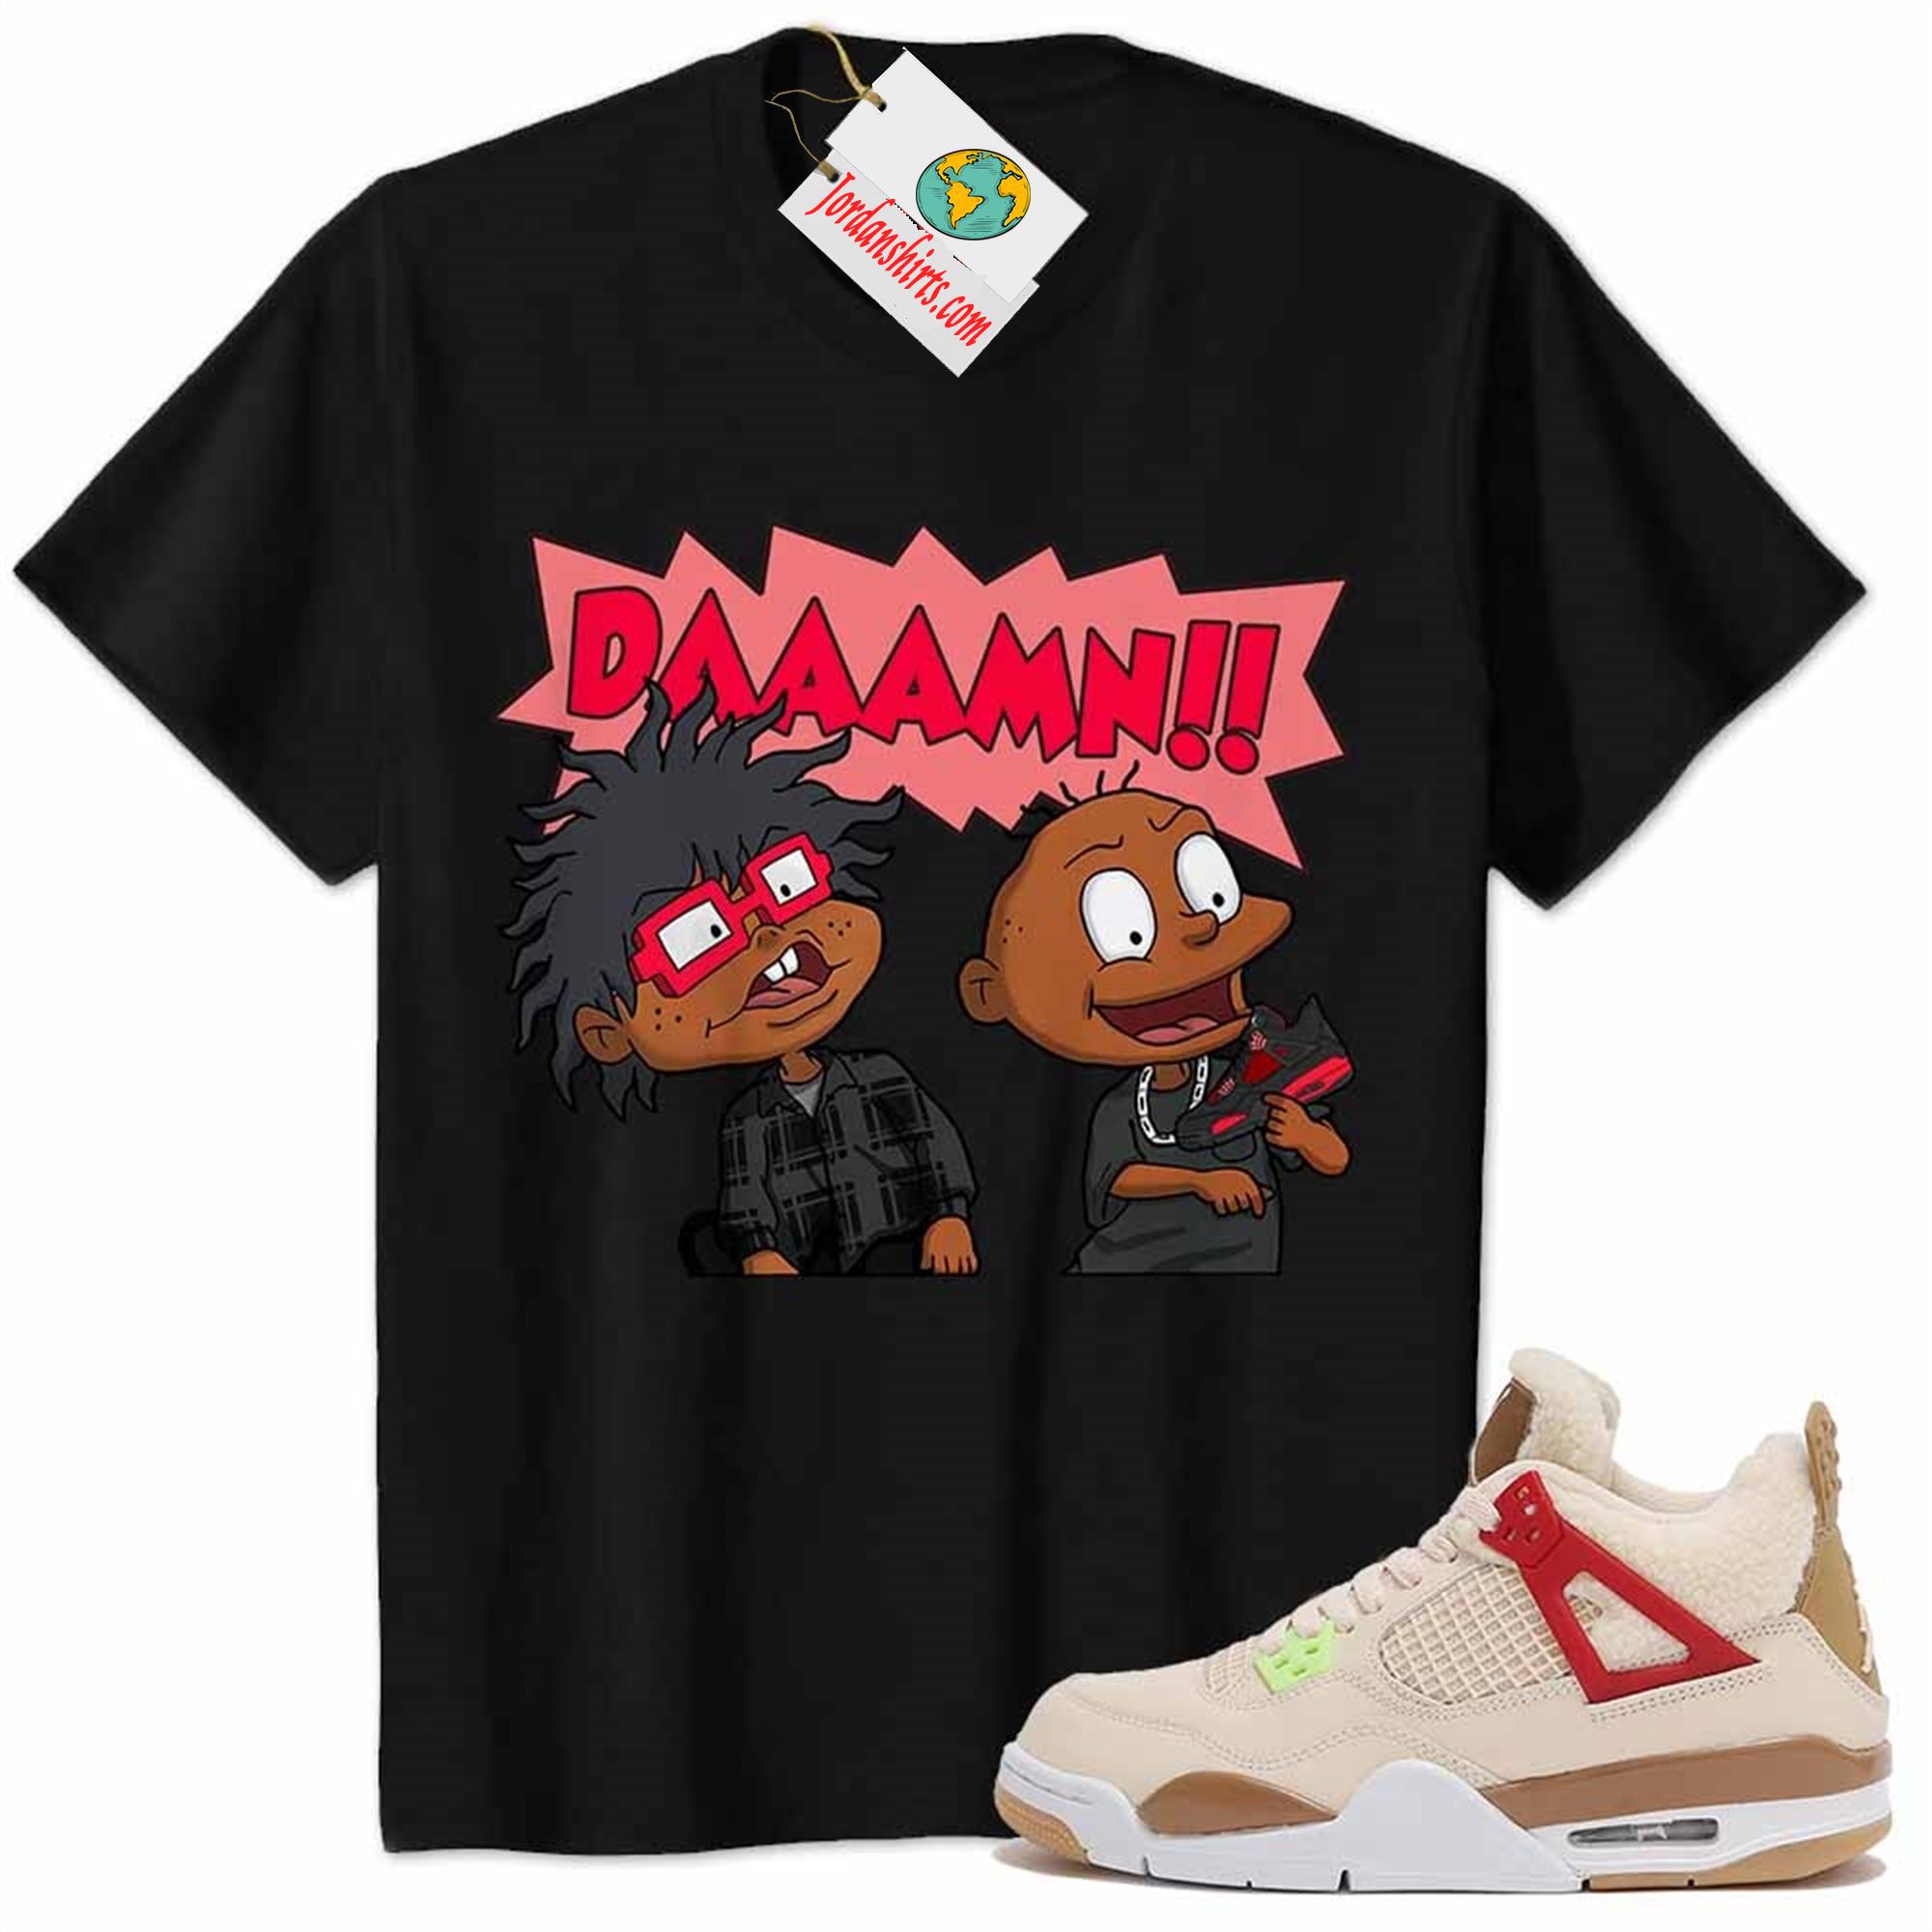 Jordan 4 Shirt, Damn Meme Smokey Rugrats Black Air Jordan 4 Wild Things 4s Plus Size Up To 5xl